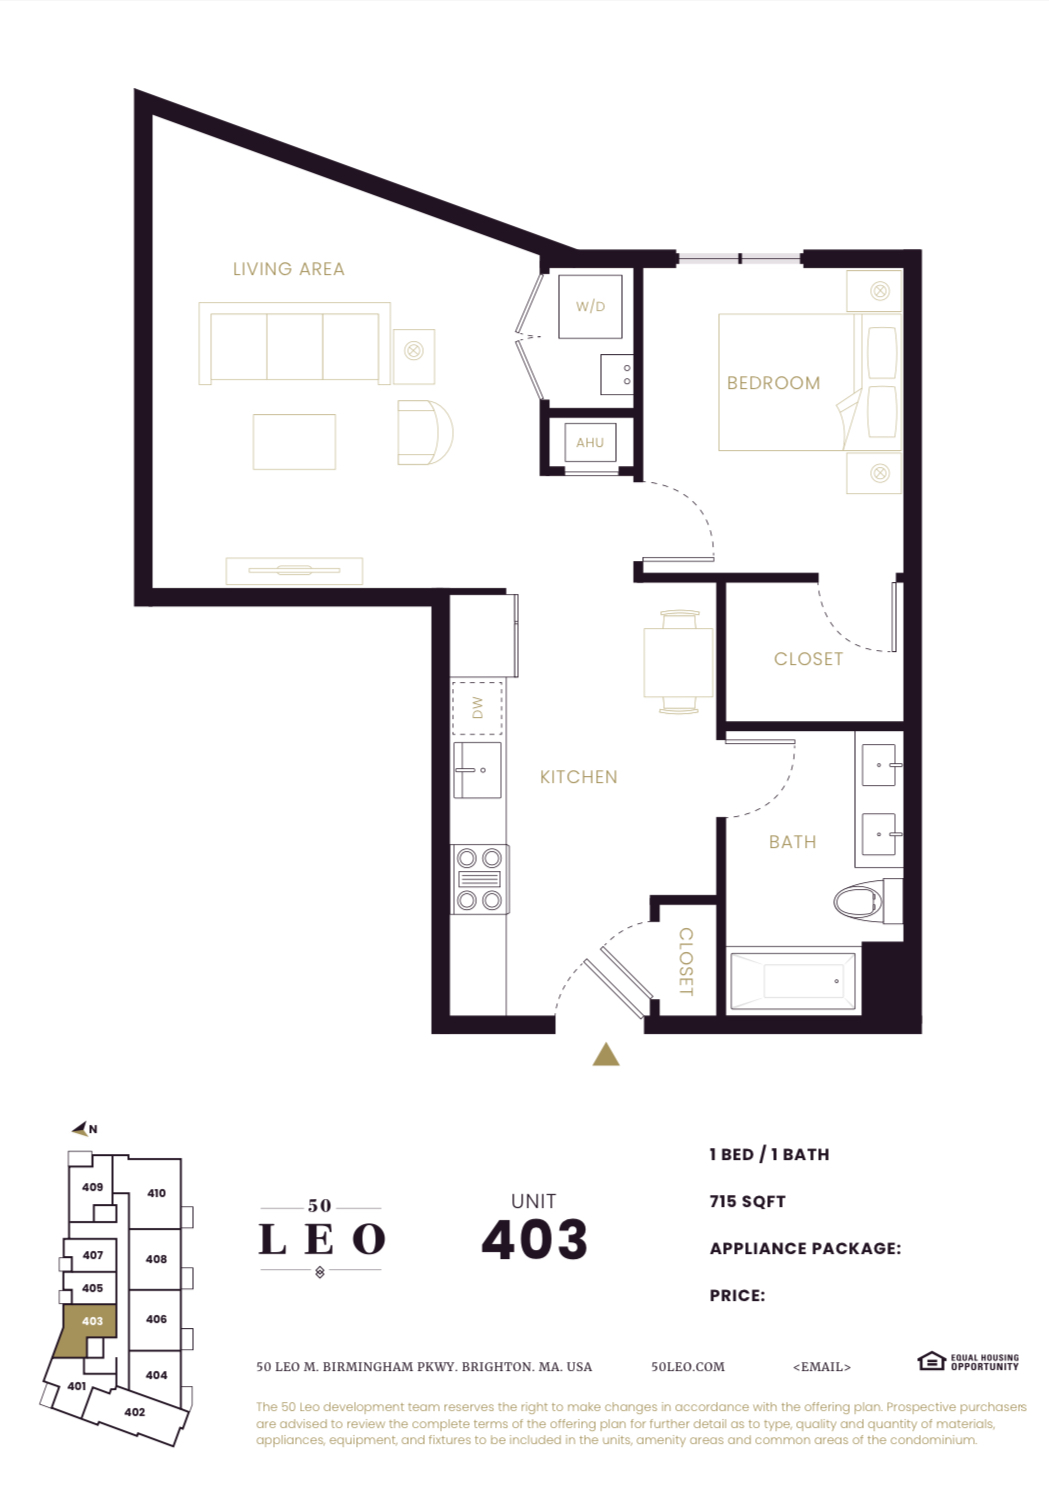 Photos of apartment on Leo M Birmingham Pkwy.,Boston MA 02135